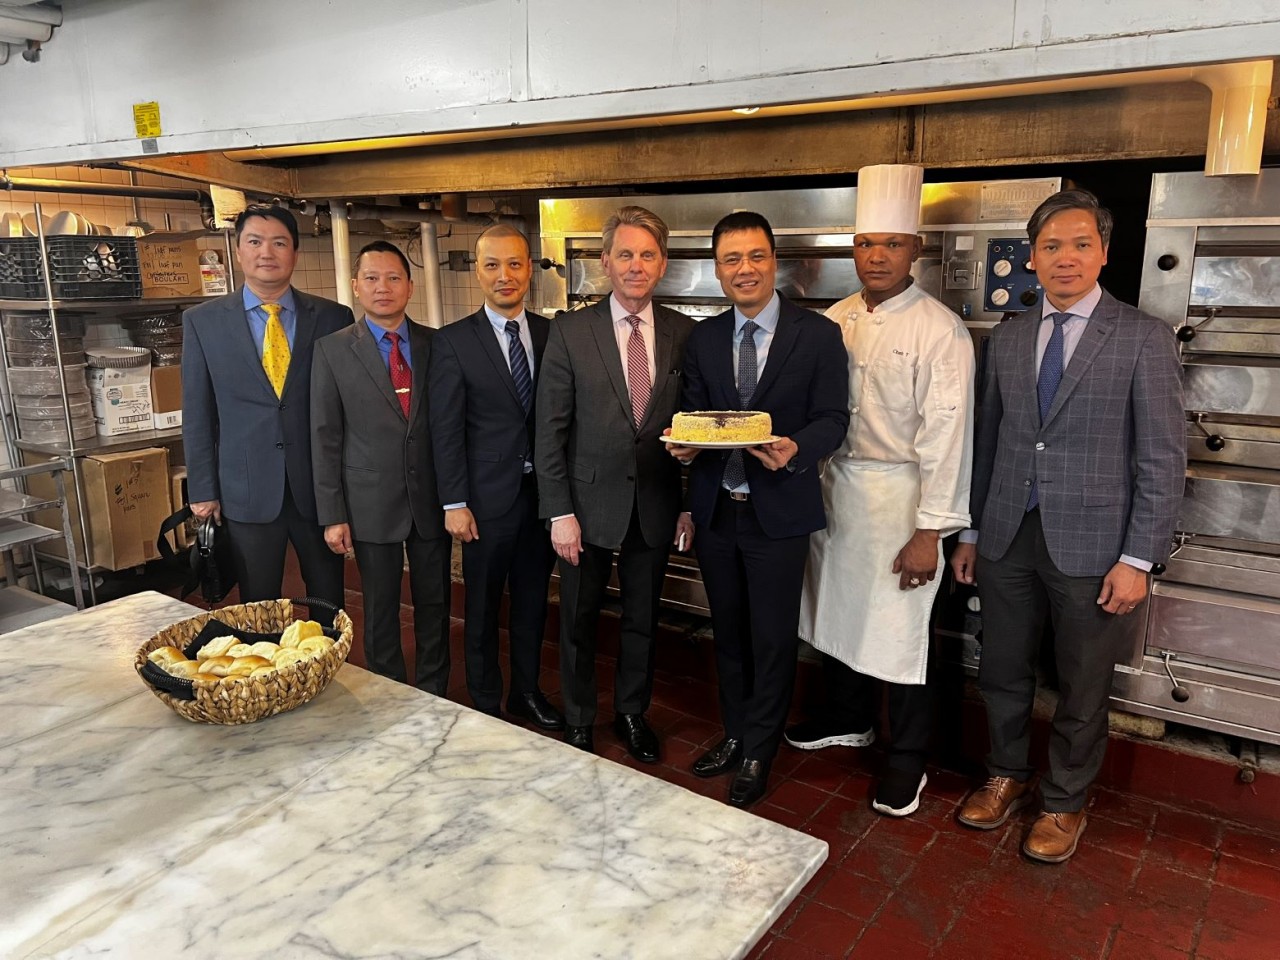 Đại sứ Đặng Hoàng Giang nhận quà lưu niệm từ Tổng Giám đốc khách sạn và anh Trần Văn Chanh – thợ bánh mang nửa dòng máu Việt đã làm việc tại lò bánh này 22 năm qua.